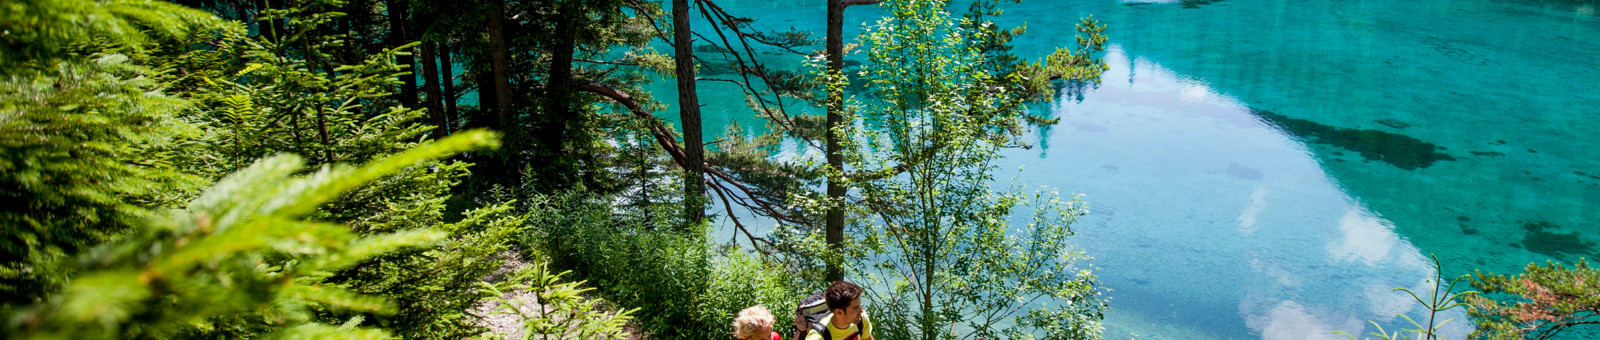     hiking around the Green Lake in Styria, mountain lake "Grüner See" 